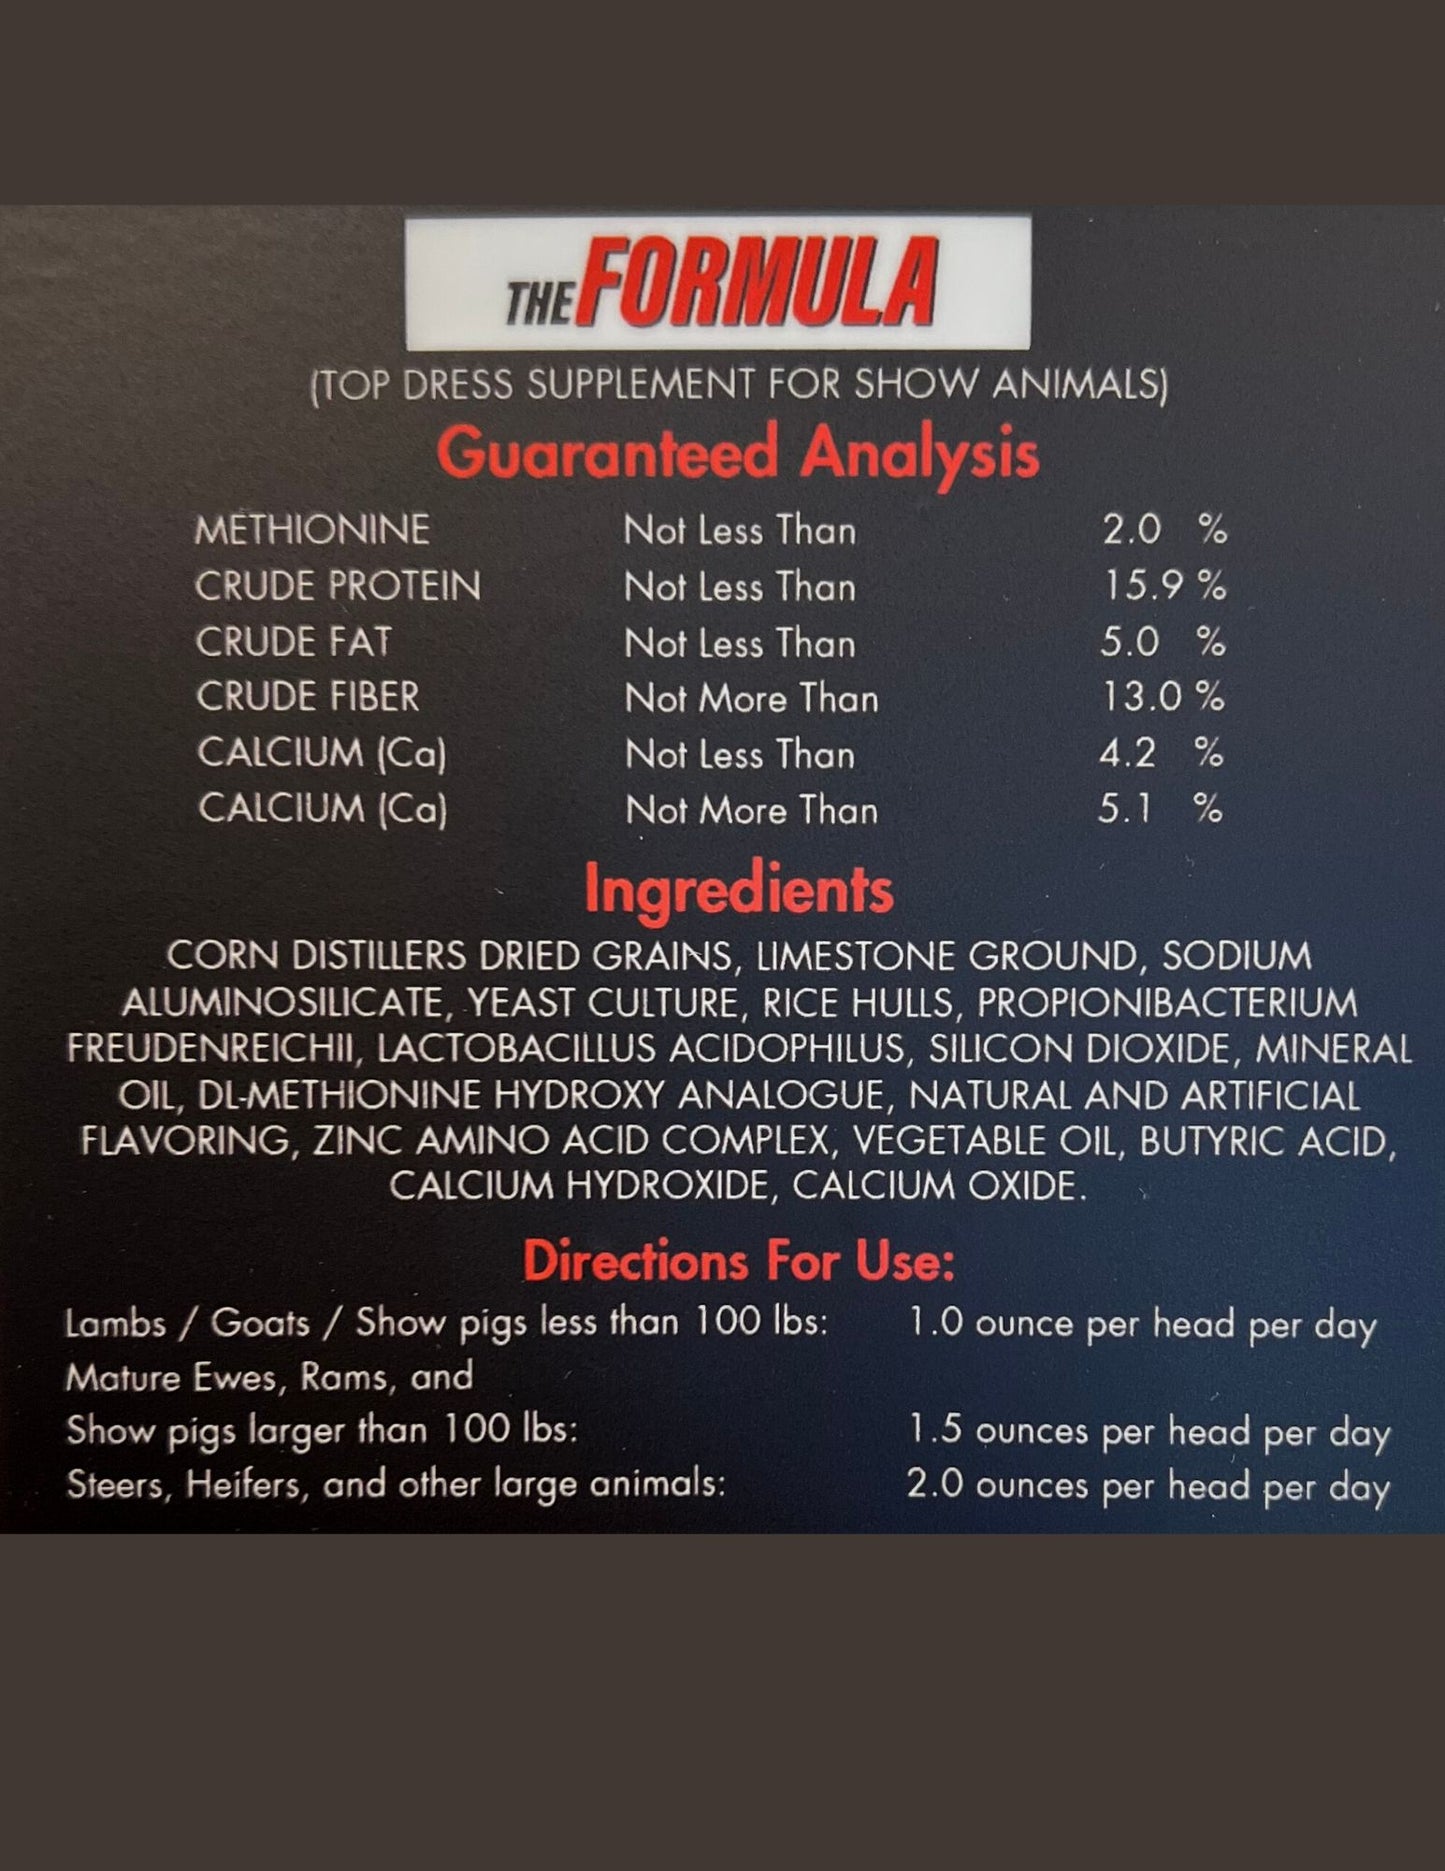 The Formula Guaranteed Analysis